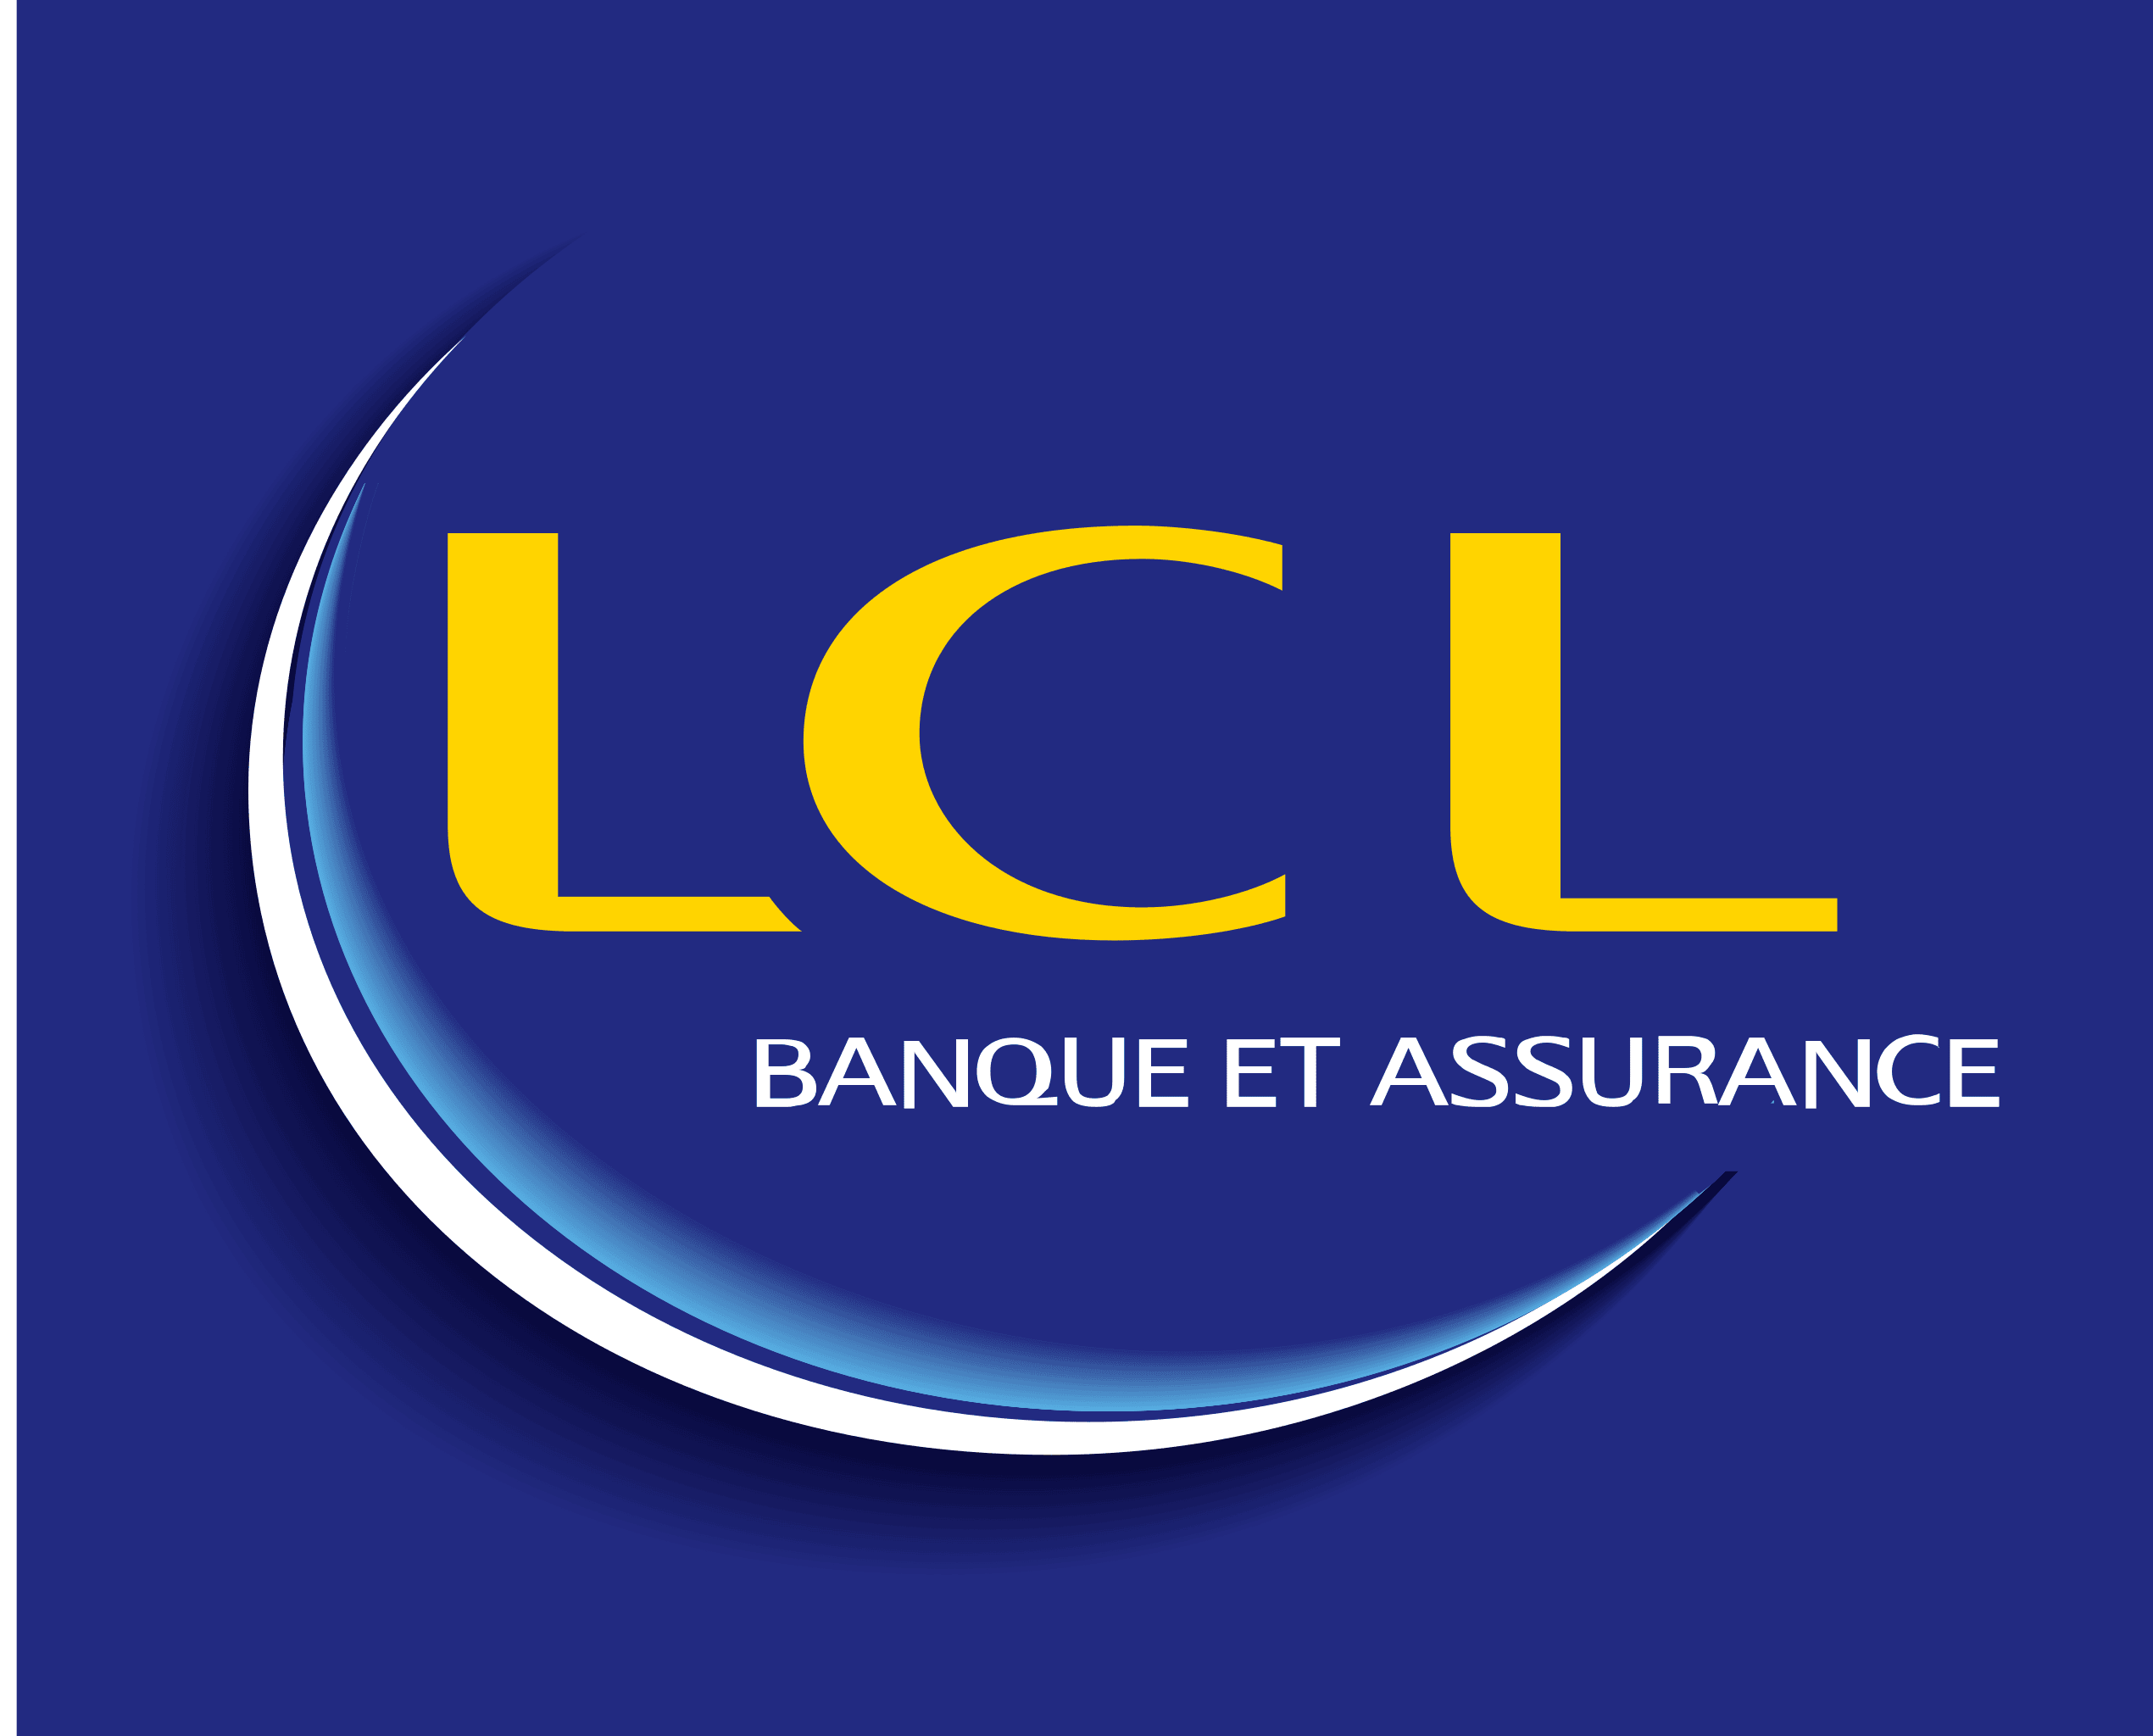 LCL Logo